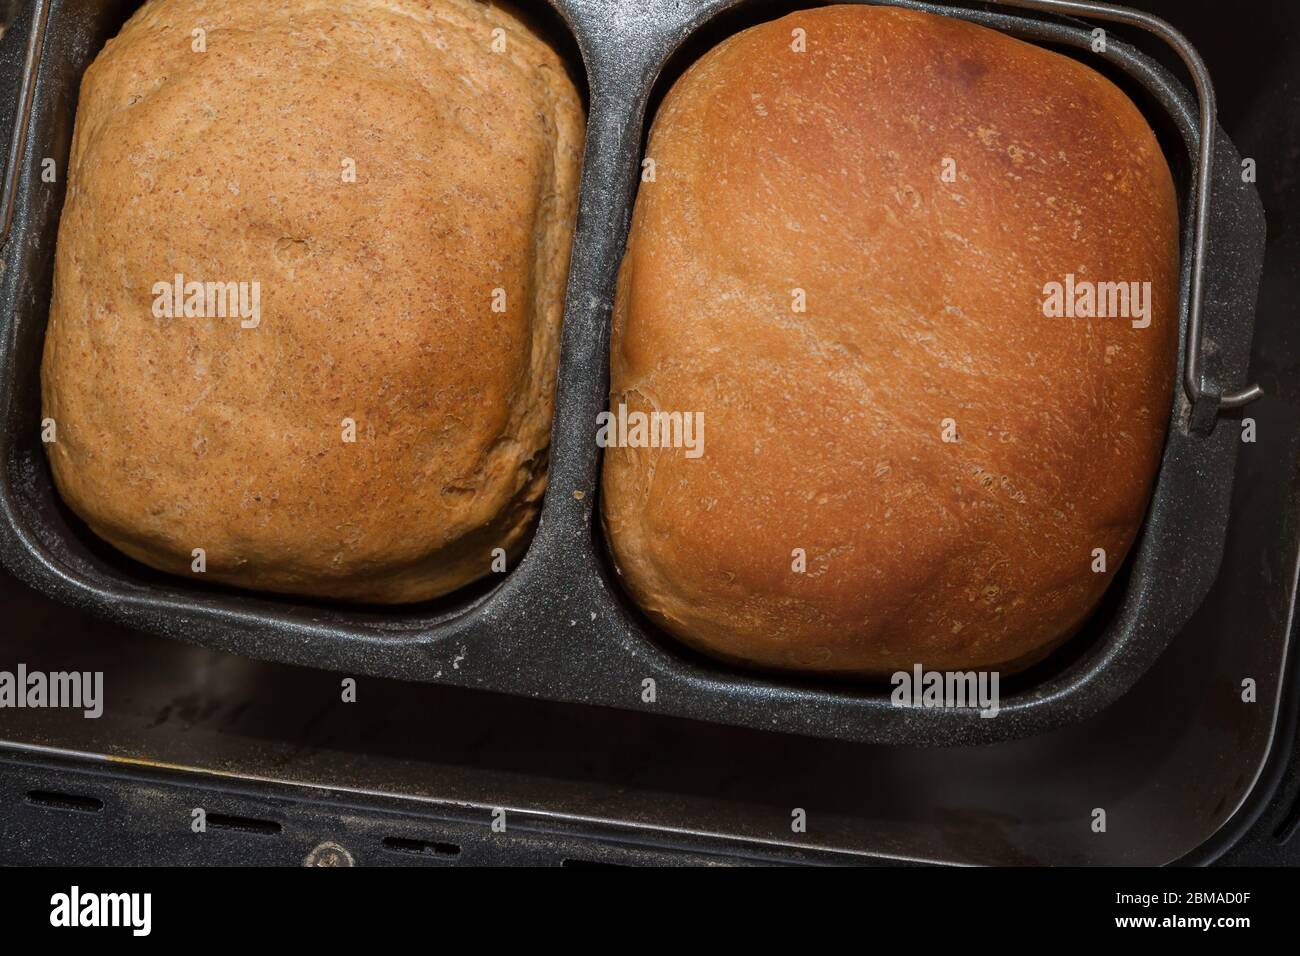 El pan casero se prepara en una panificadora Foto de stock